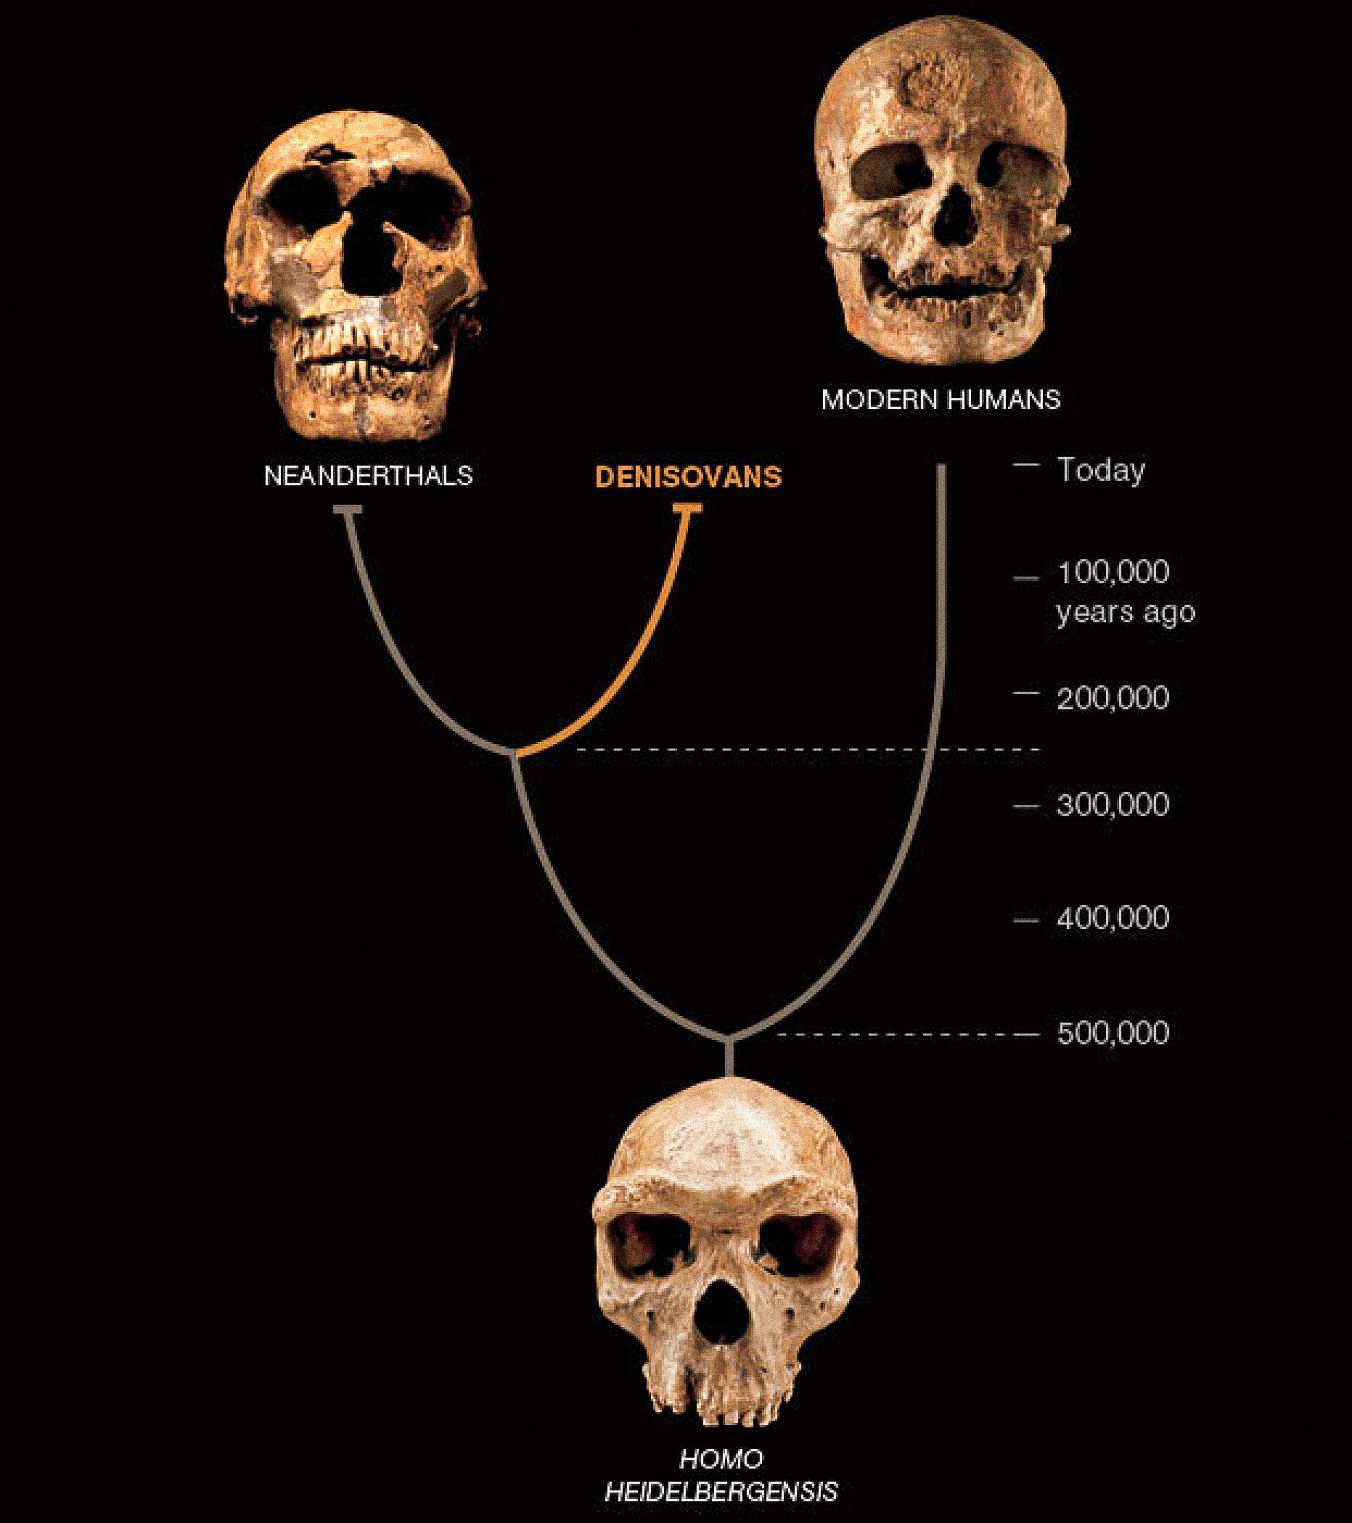 Zdi se, da je tretja vrsta ljudi, imenovana denisovci, v Aziji sobivala z neandertalci in zgodnjimi modernimi ljudmi. Zadnja dva sta znana po številnih fosilih in artefaktih. Denisovce do zdaj opredeljuje samo DNK iz enega kostnega čipa in dveh zob, vendar razkriva nov zasuk v človeški zgodbi.